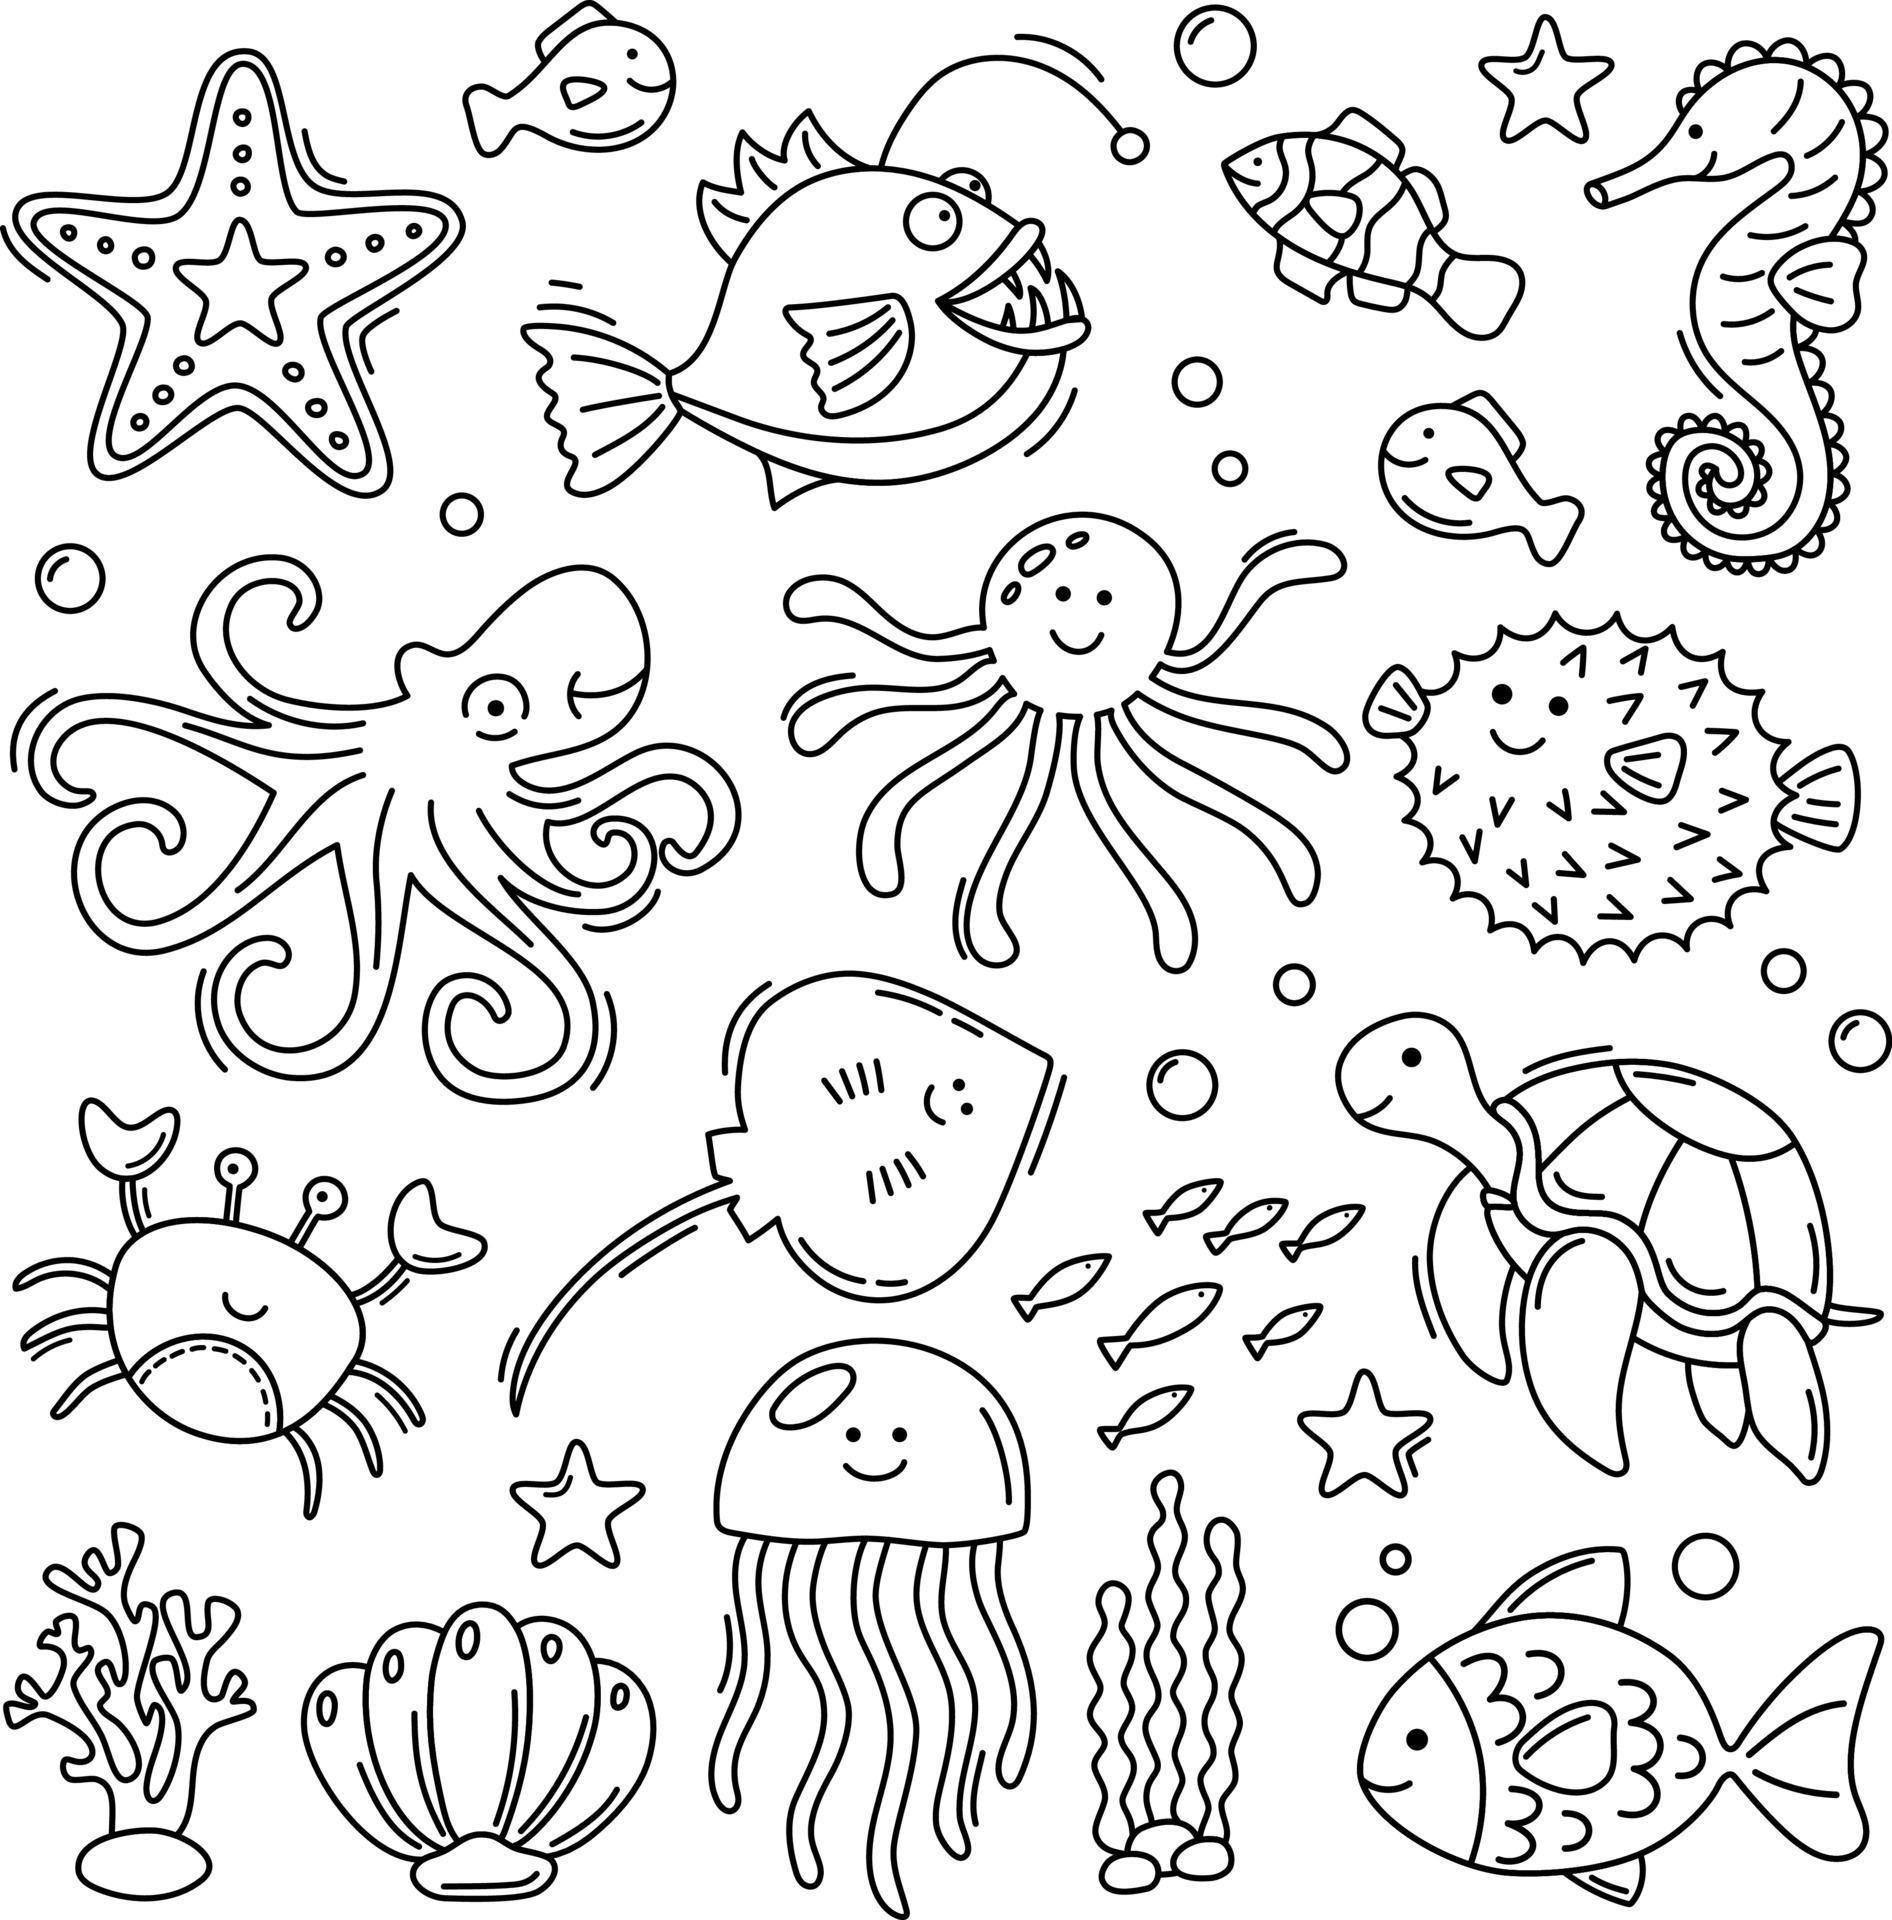 Doodle happy underwater animals collection 14744576 Vector Art at Vecteezy